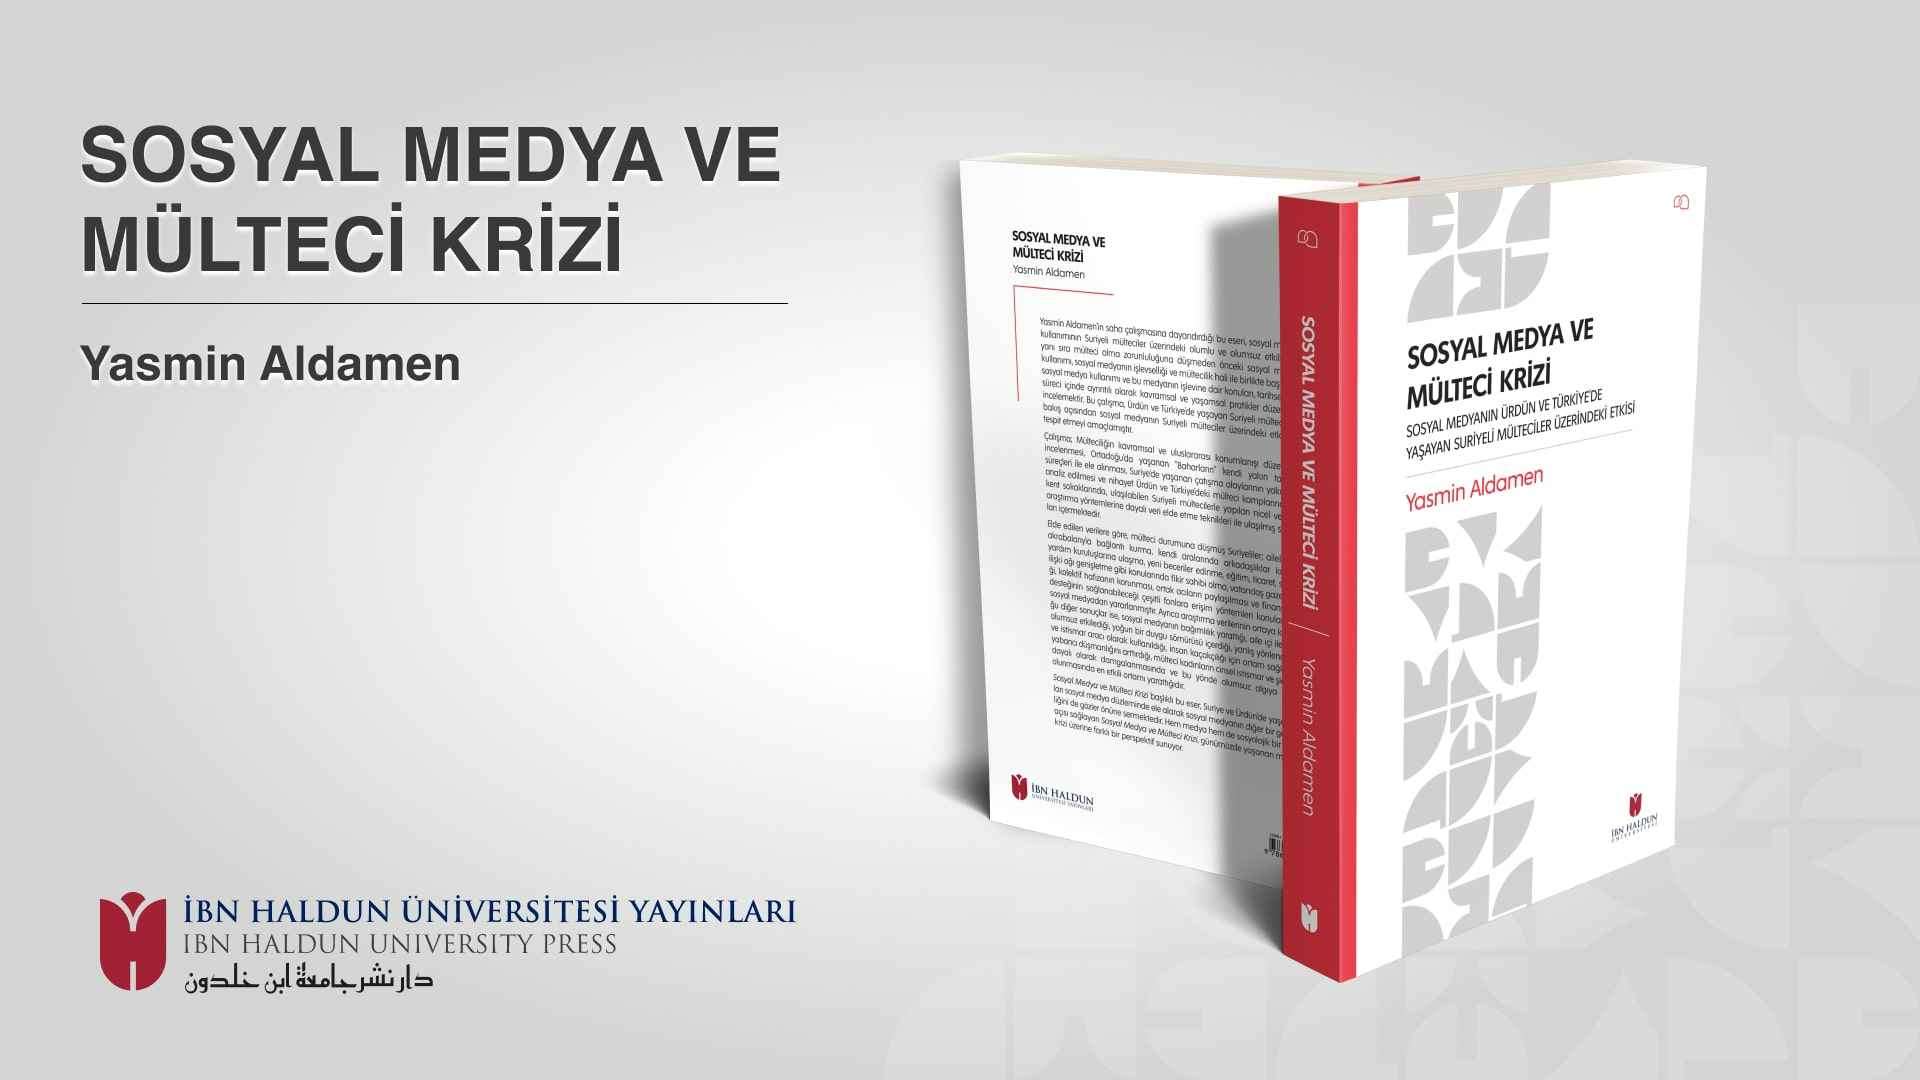 ‘Sosyal Medya ve Mülteci Krizi’ Kitabı İbn Haldun Üniversitesi Yayınları’ndan Çıktı